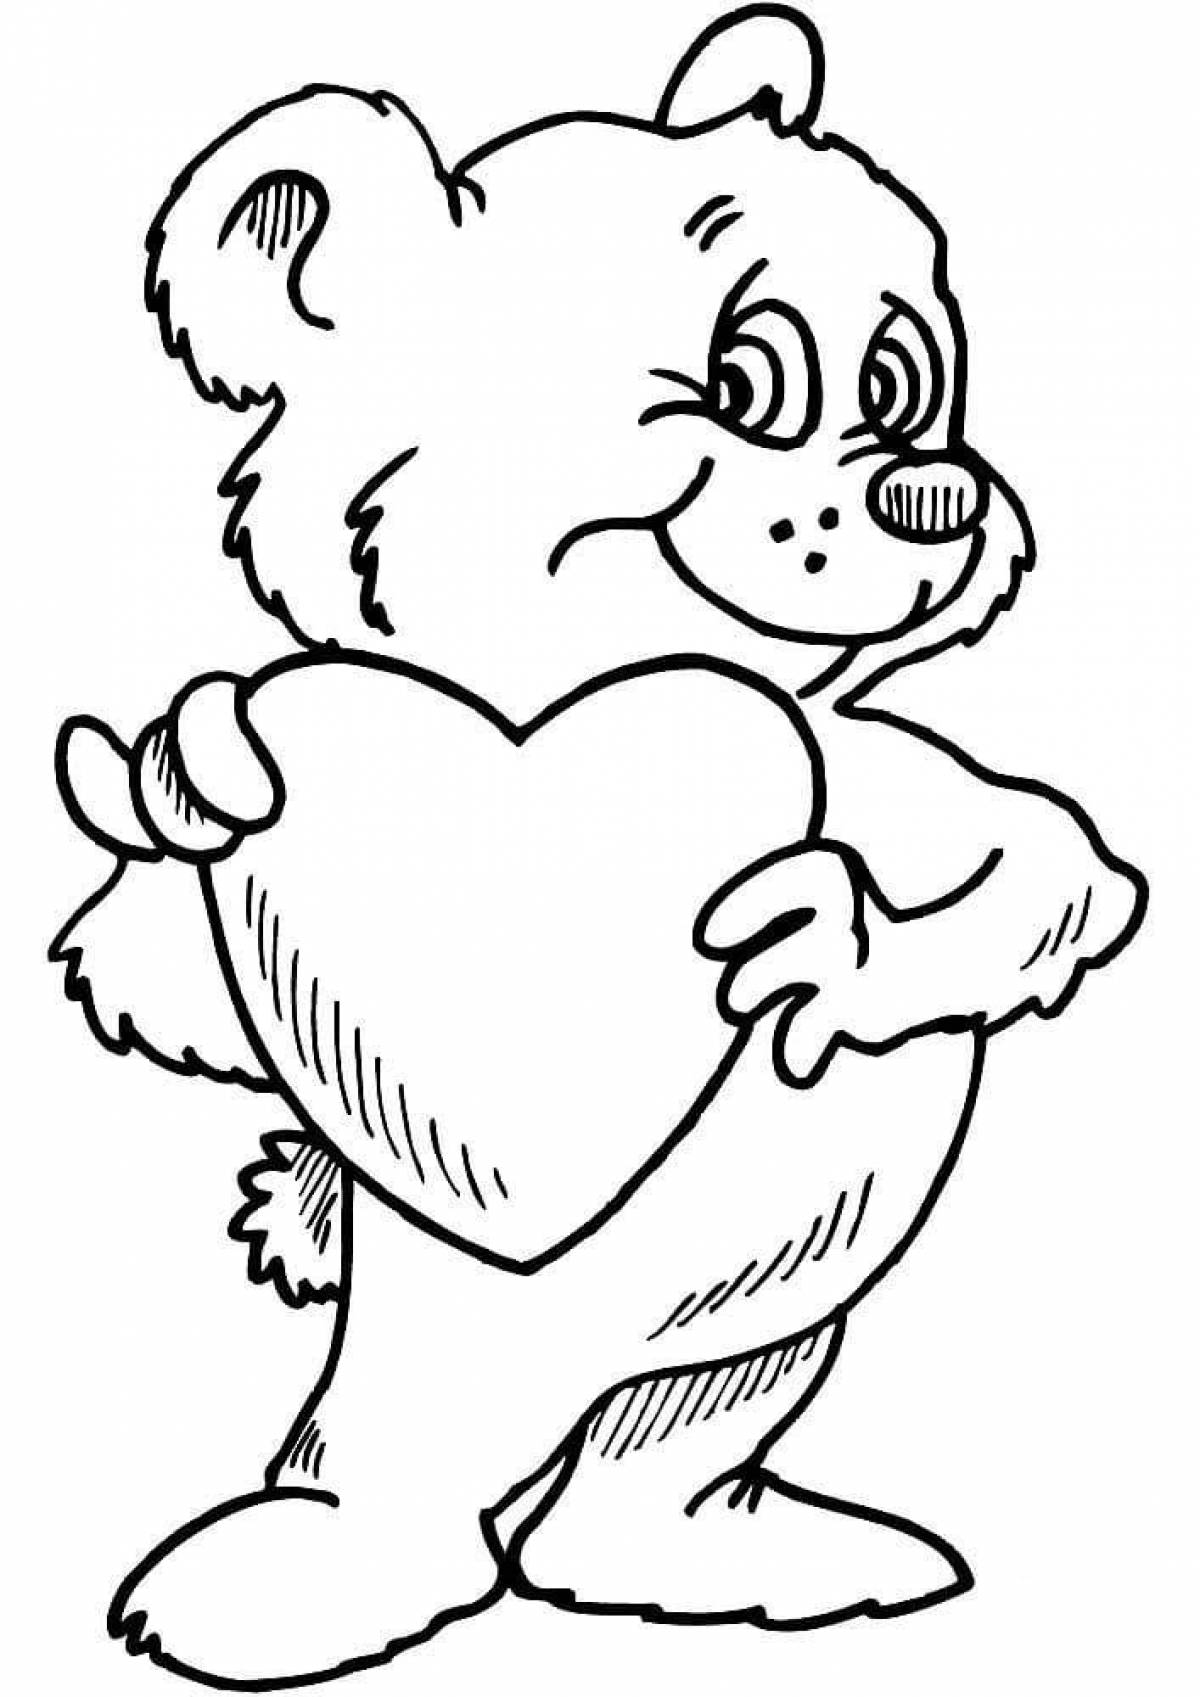 Раскраска любящий медведь с сердечком